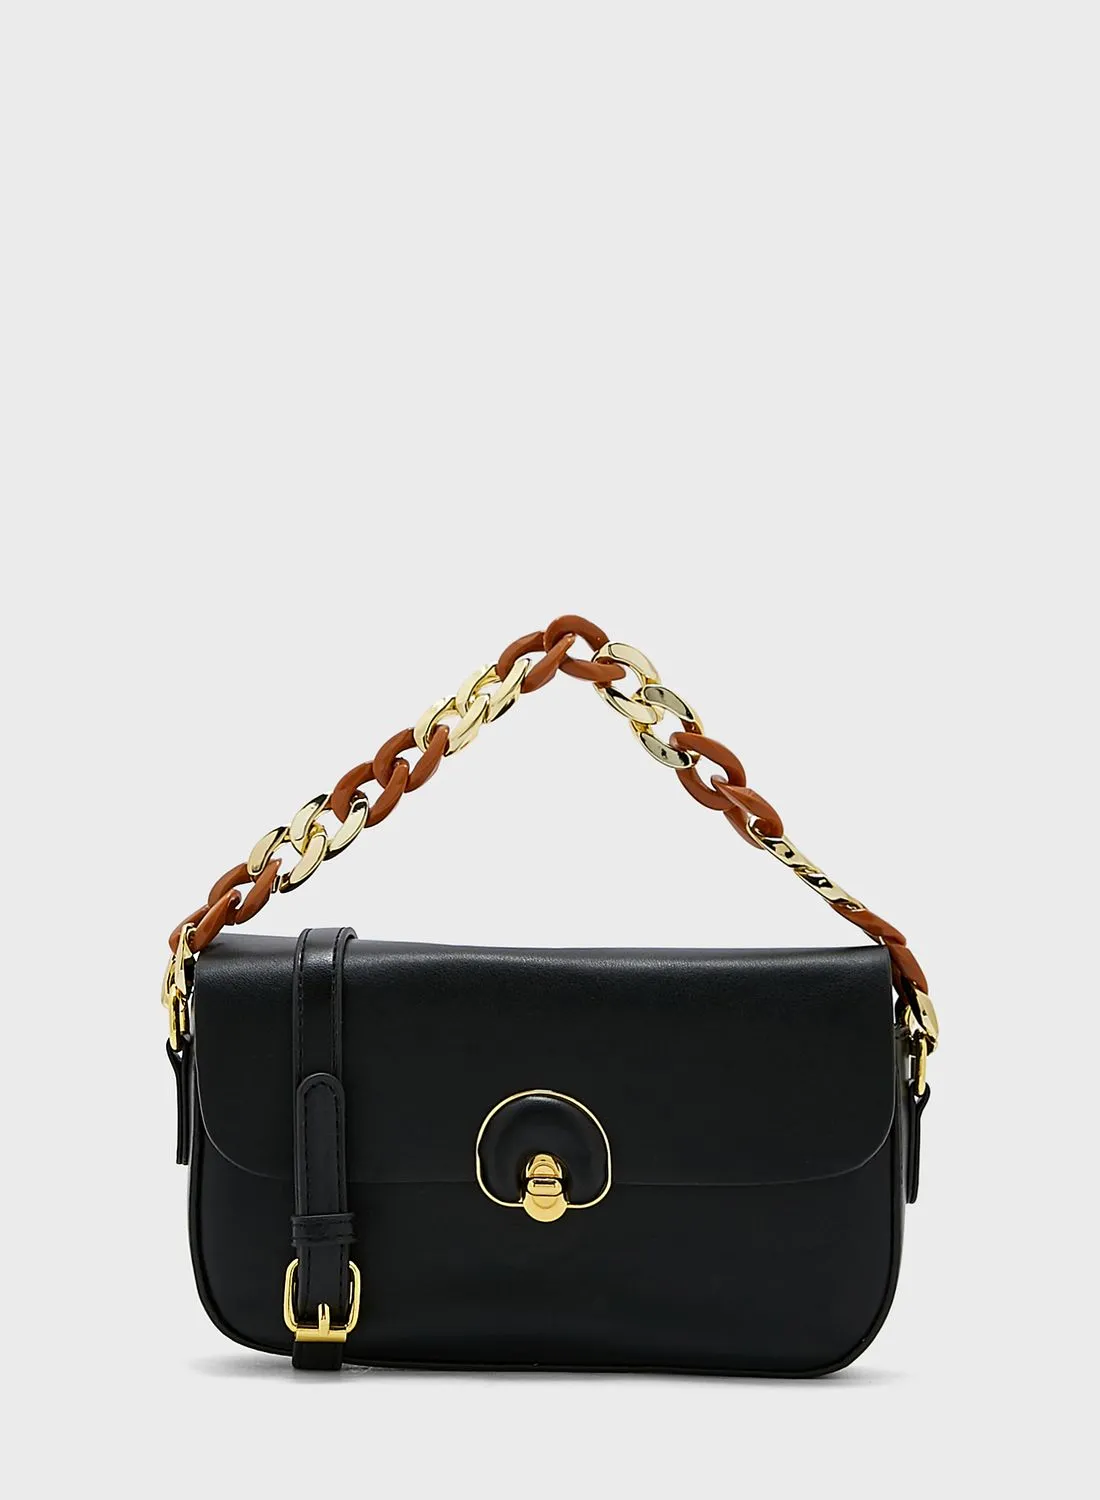 ELLA Chain Strap Bag